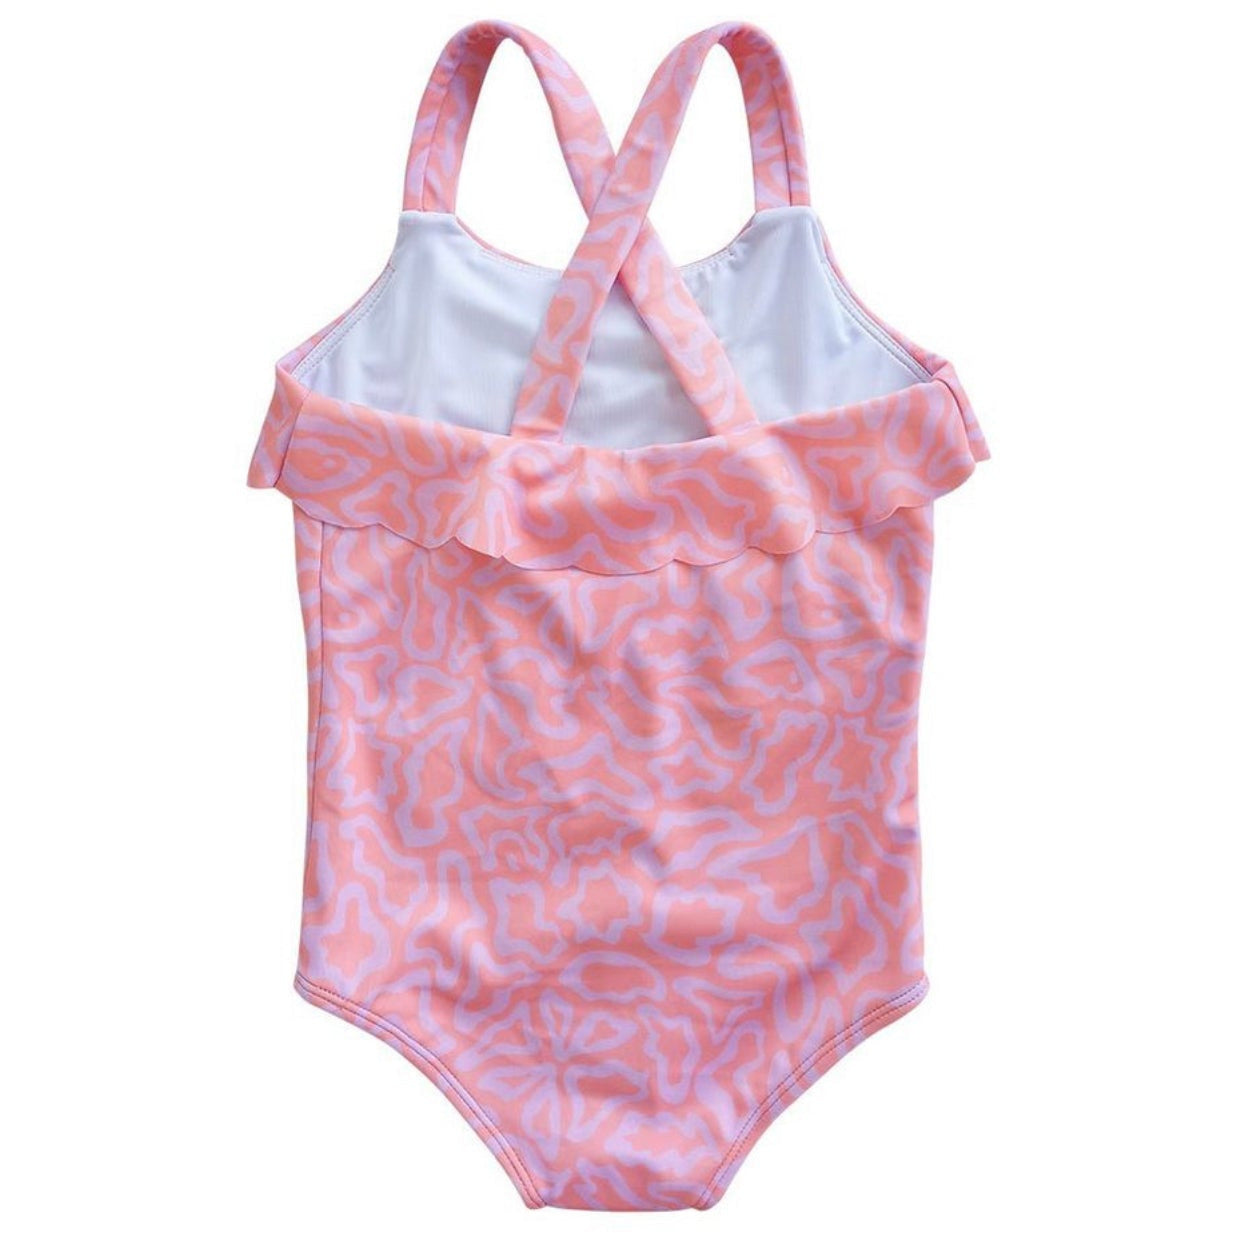 Baby Swimsuit - Terracotta Butterflight